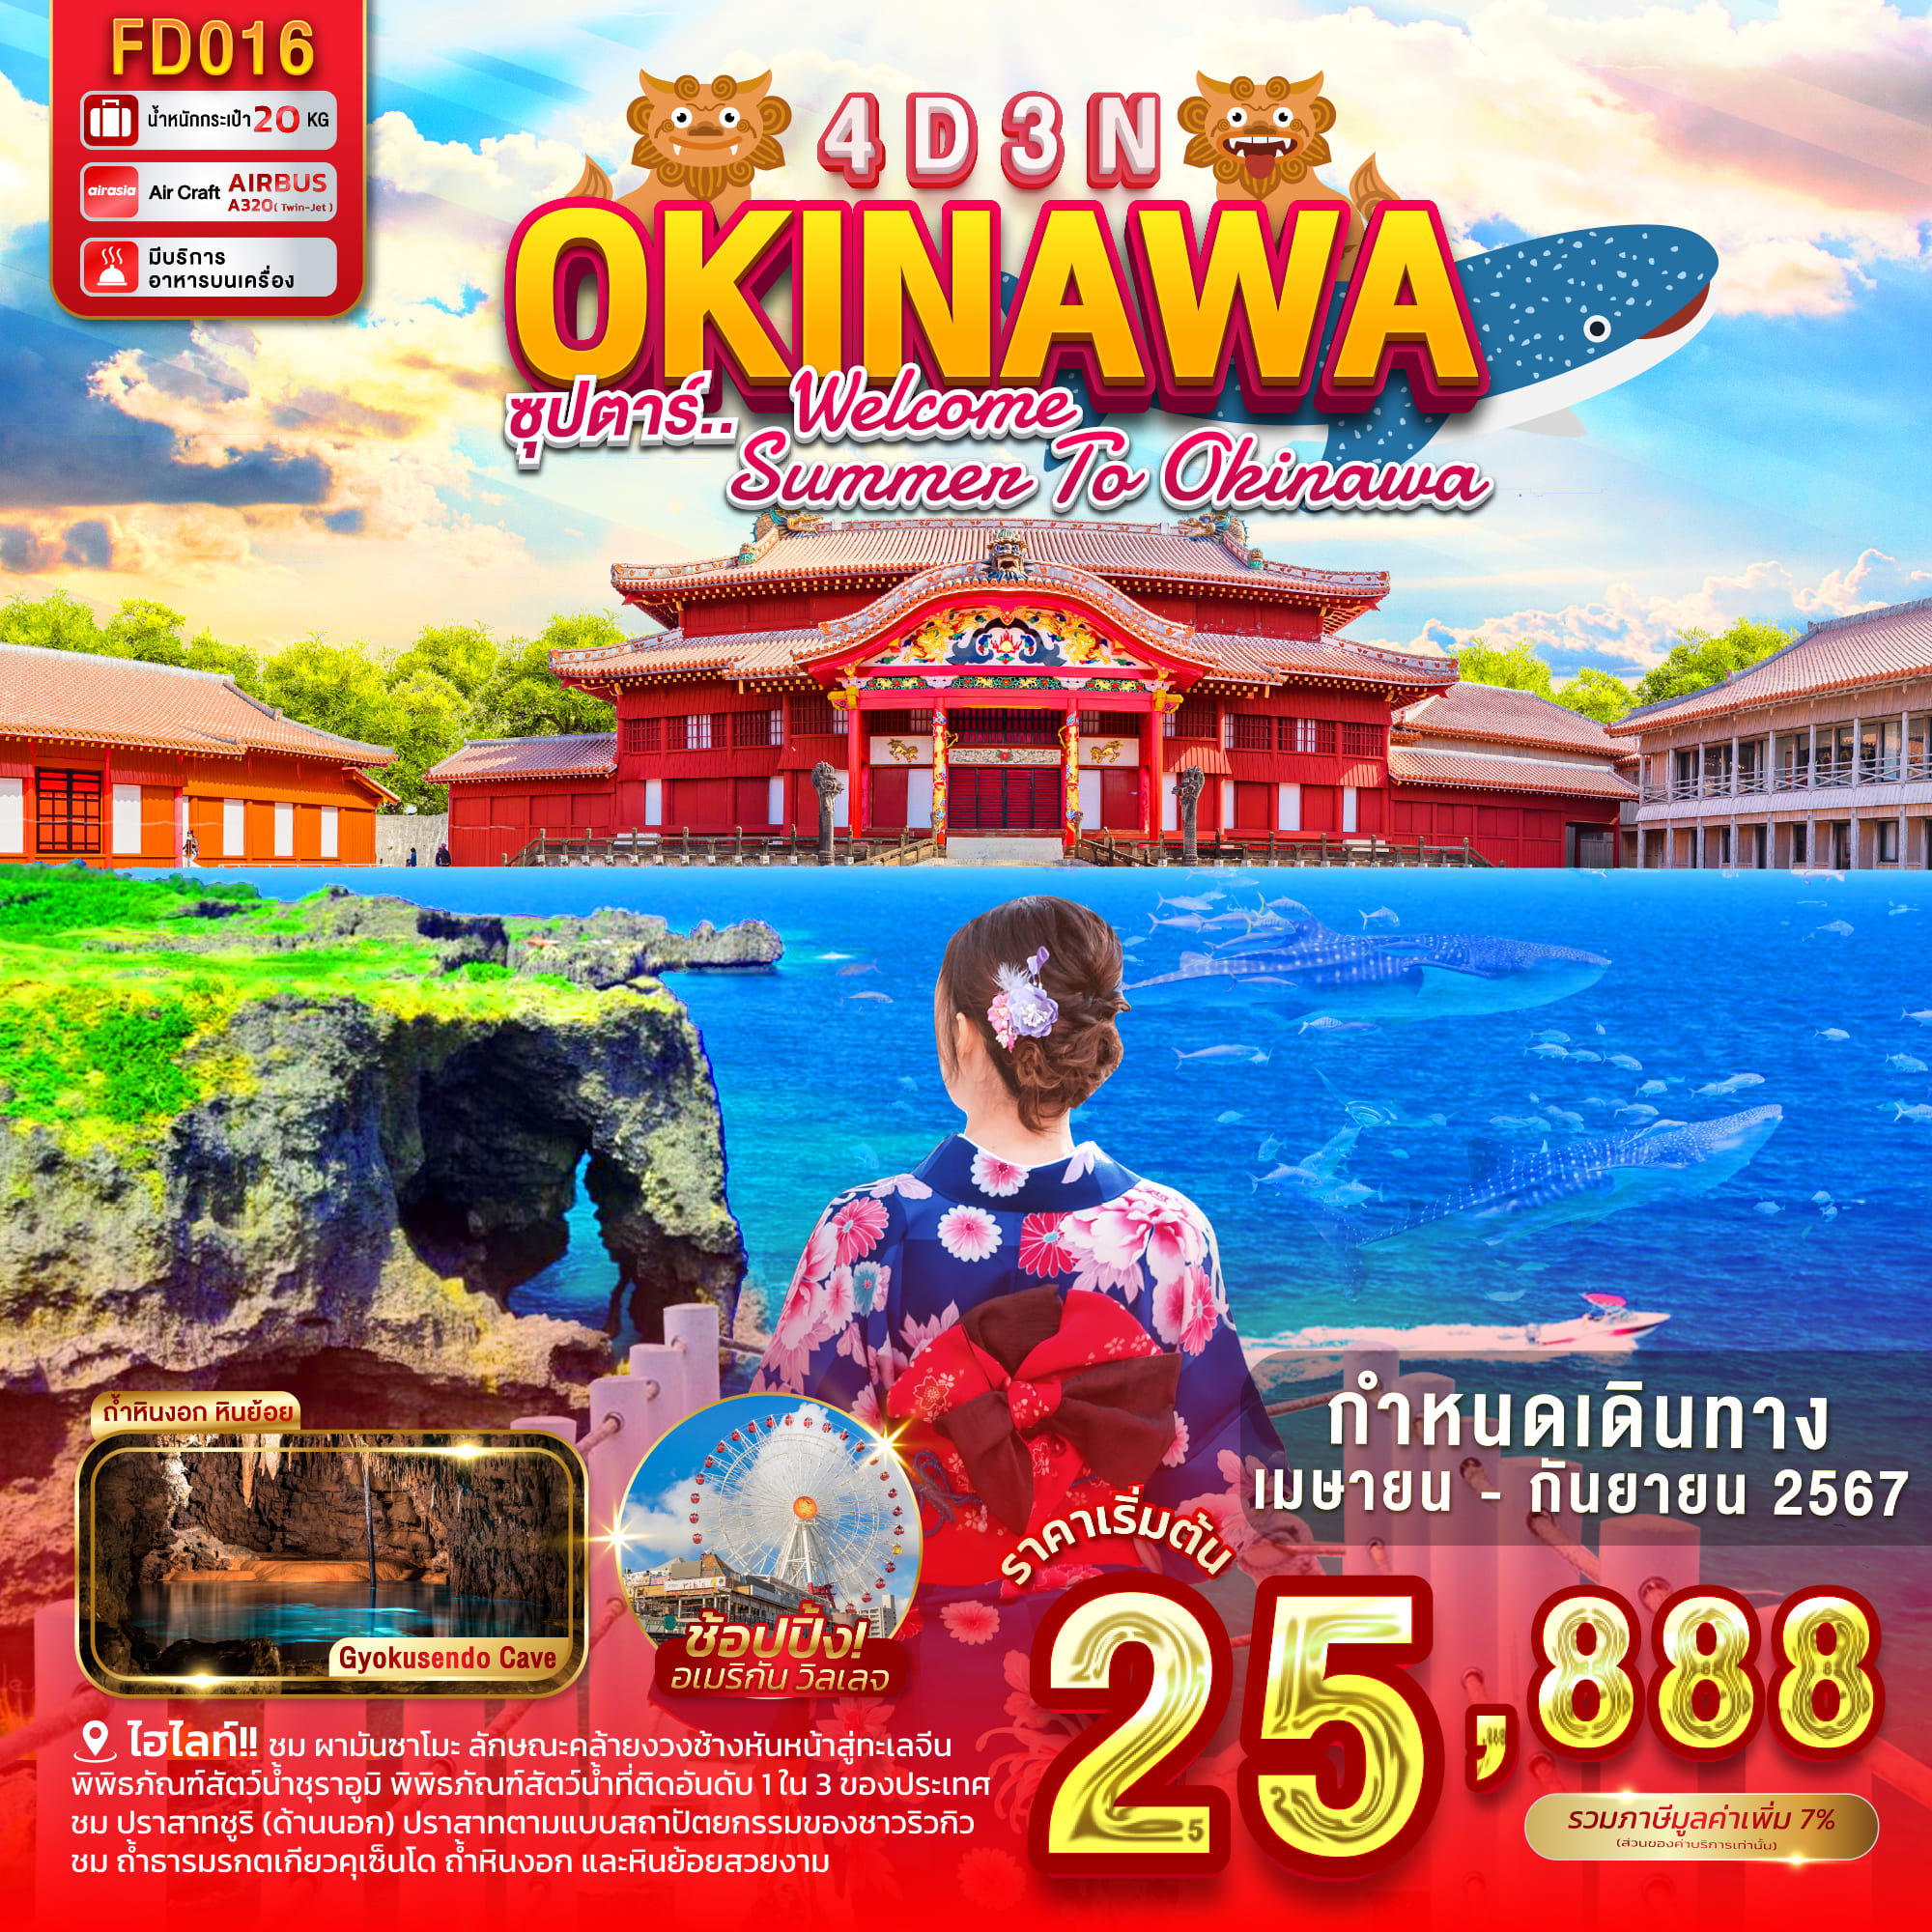 ทัวร์ญี่ปุ่น OKINAWA ซุปตาร์ WELCOME SUMMER TO OKINAWA 4วัน 3คืน (FD)